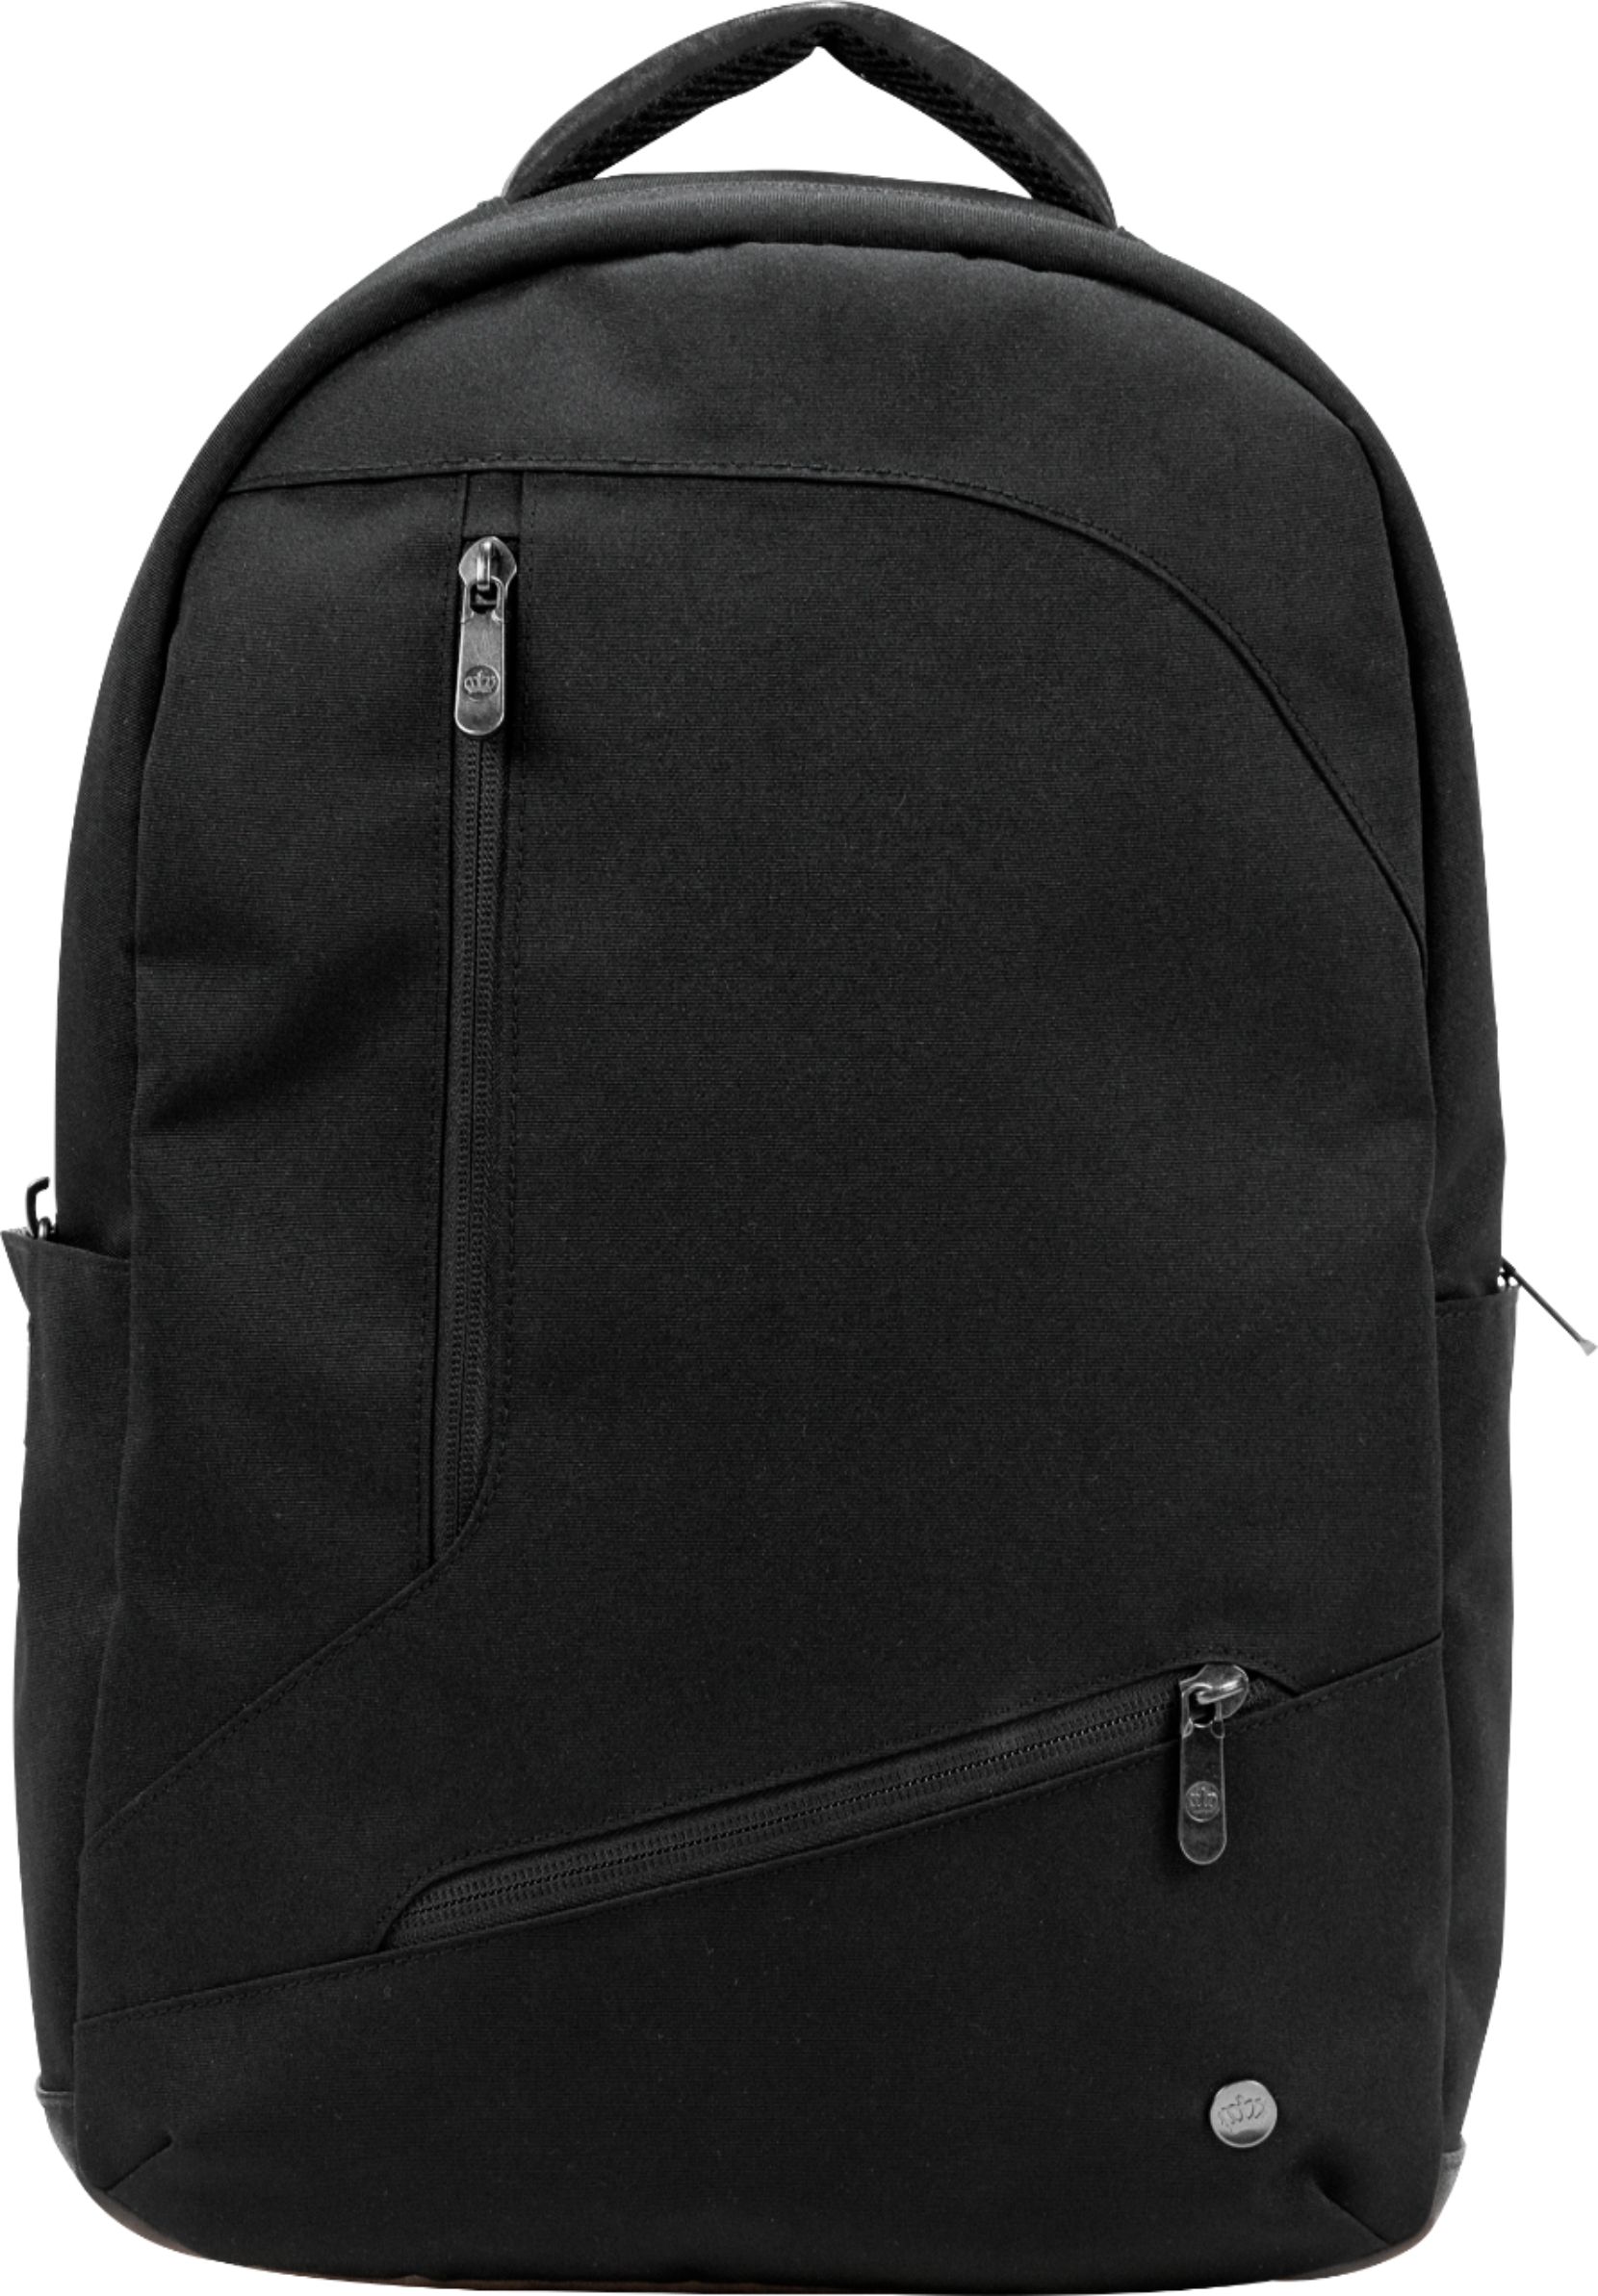 PKG - Backpack for 16" Laptop - Black